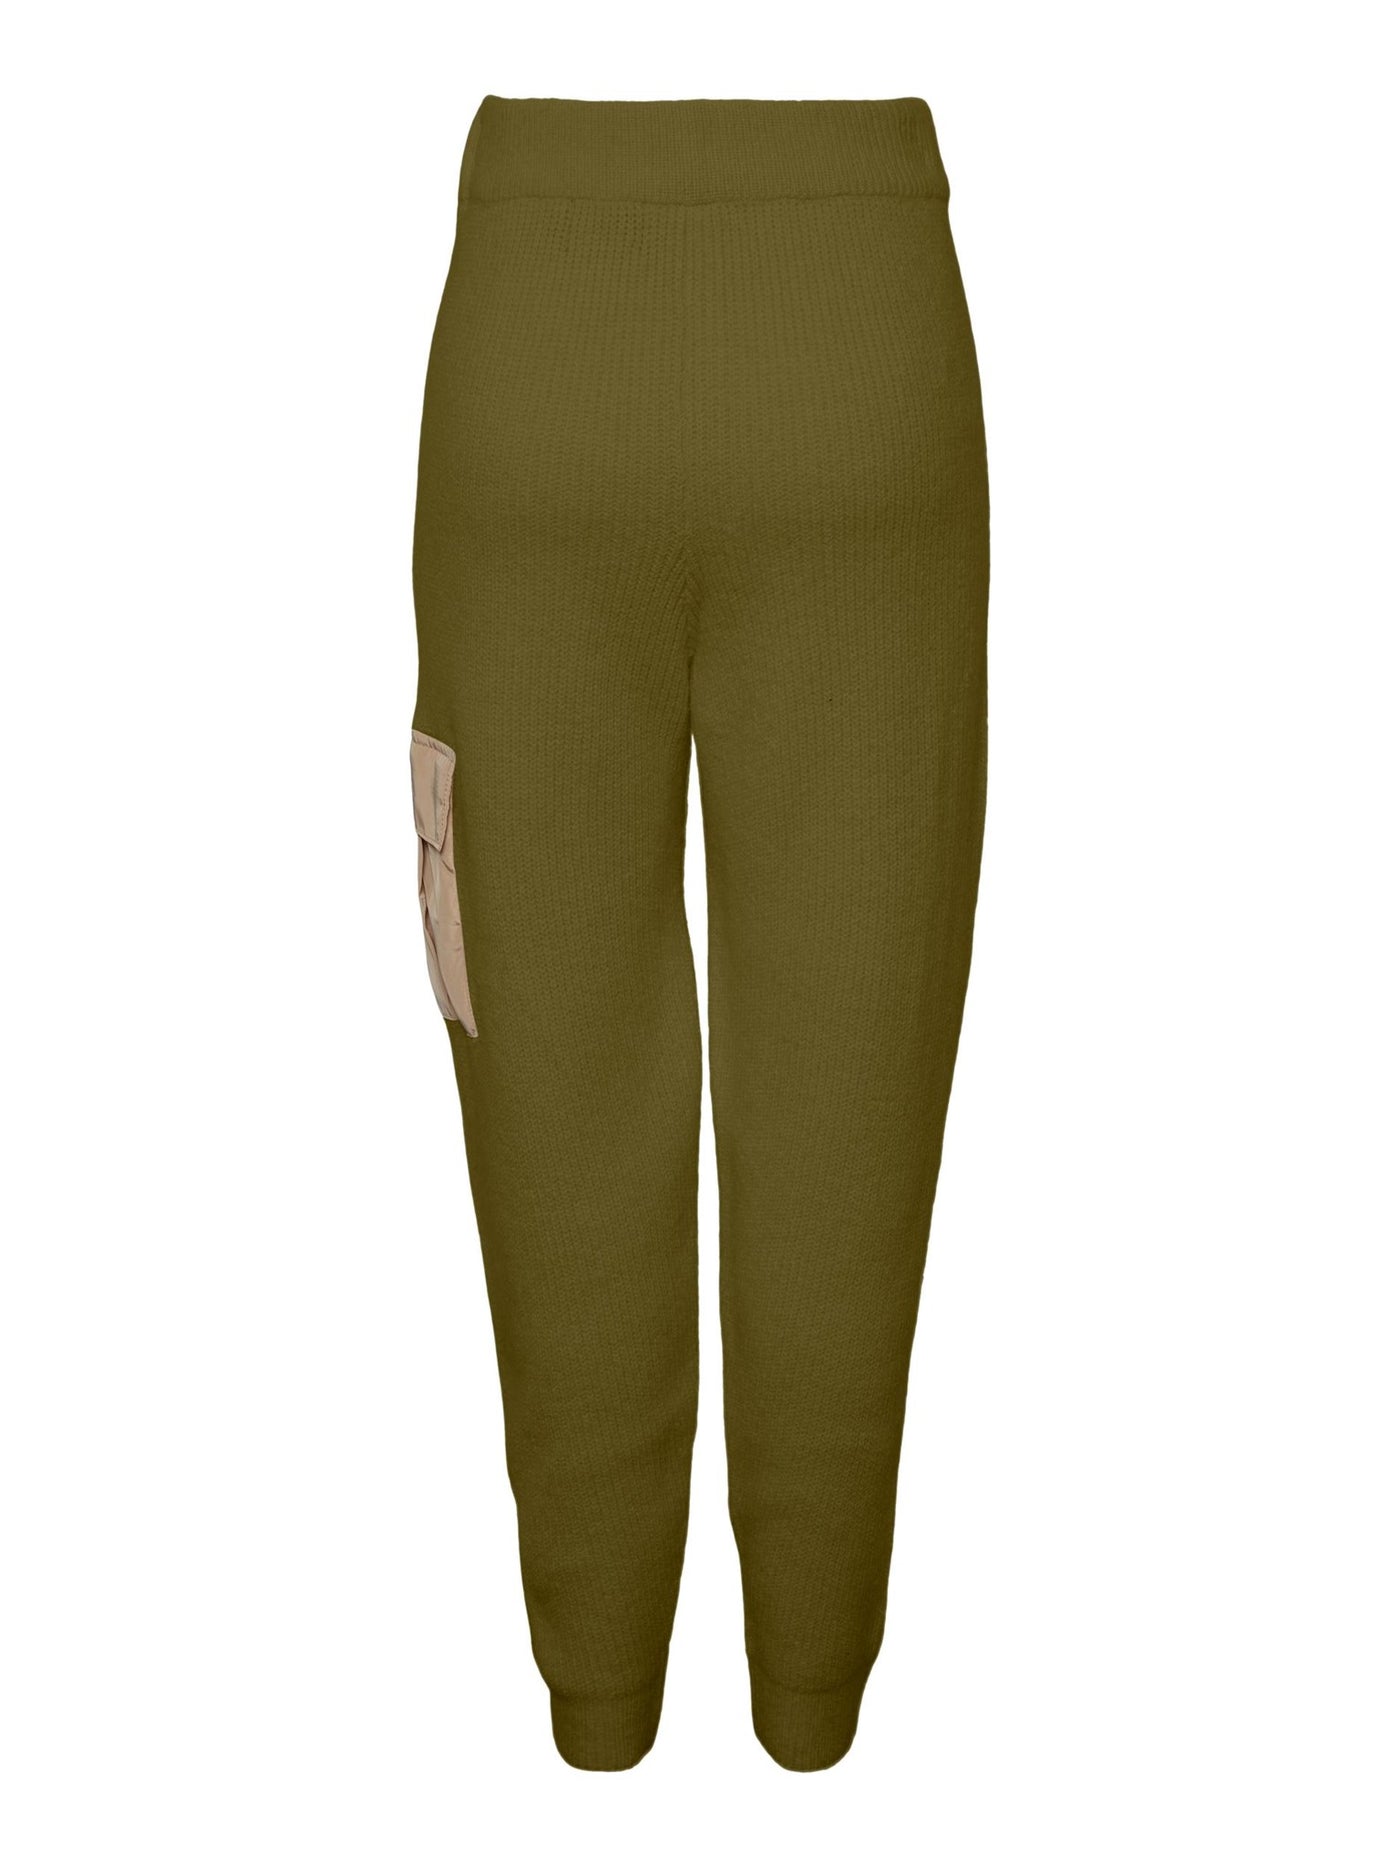 Naura Knit Pants - Fir Green - PIECES 2